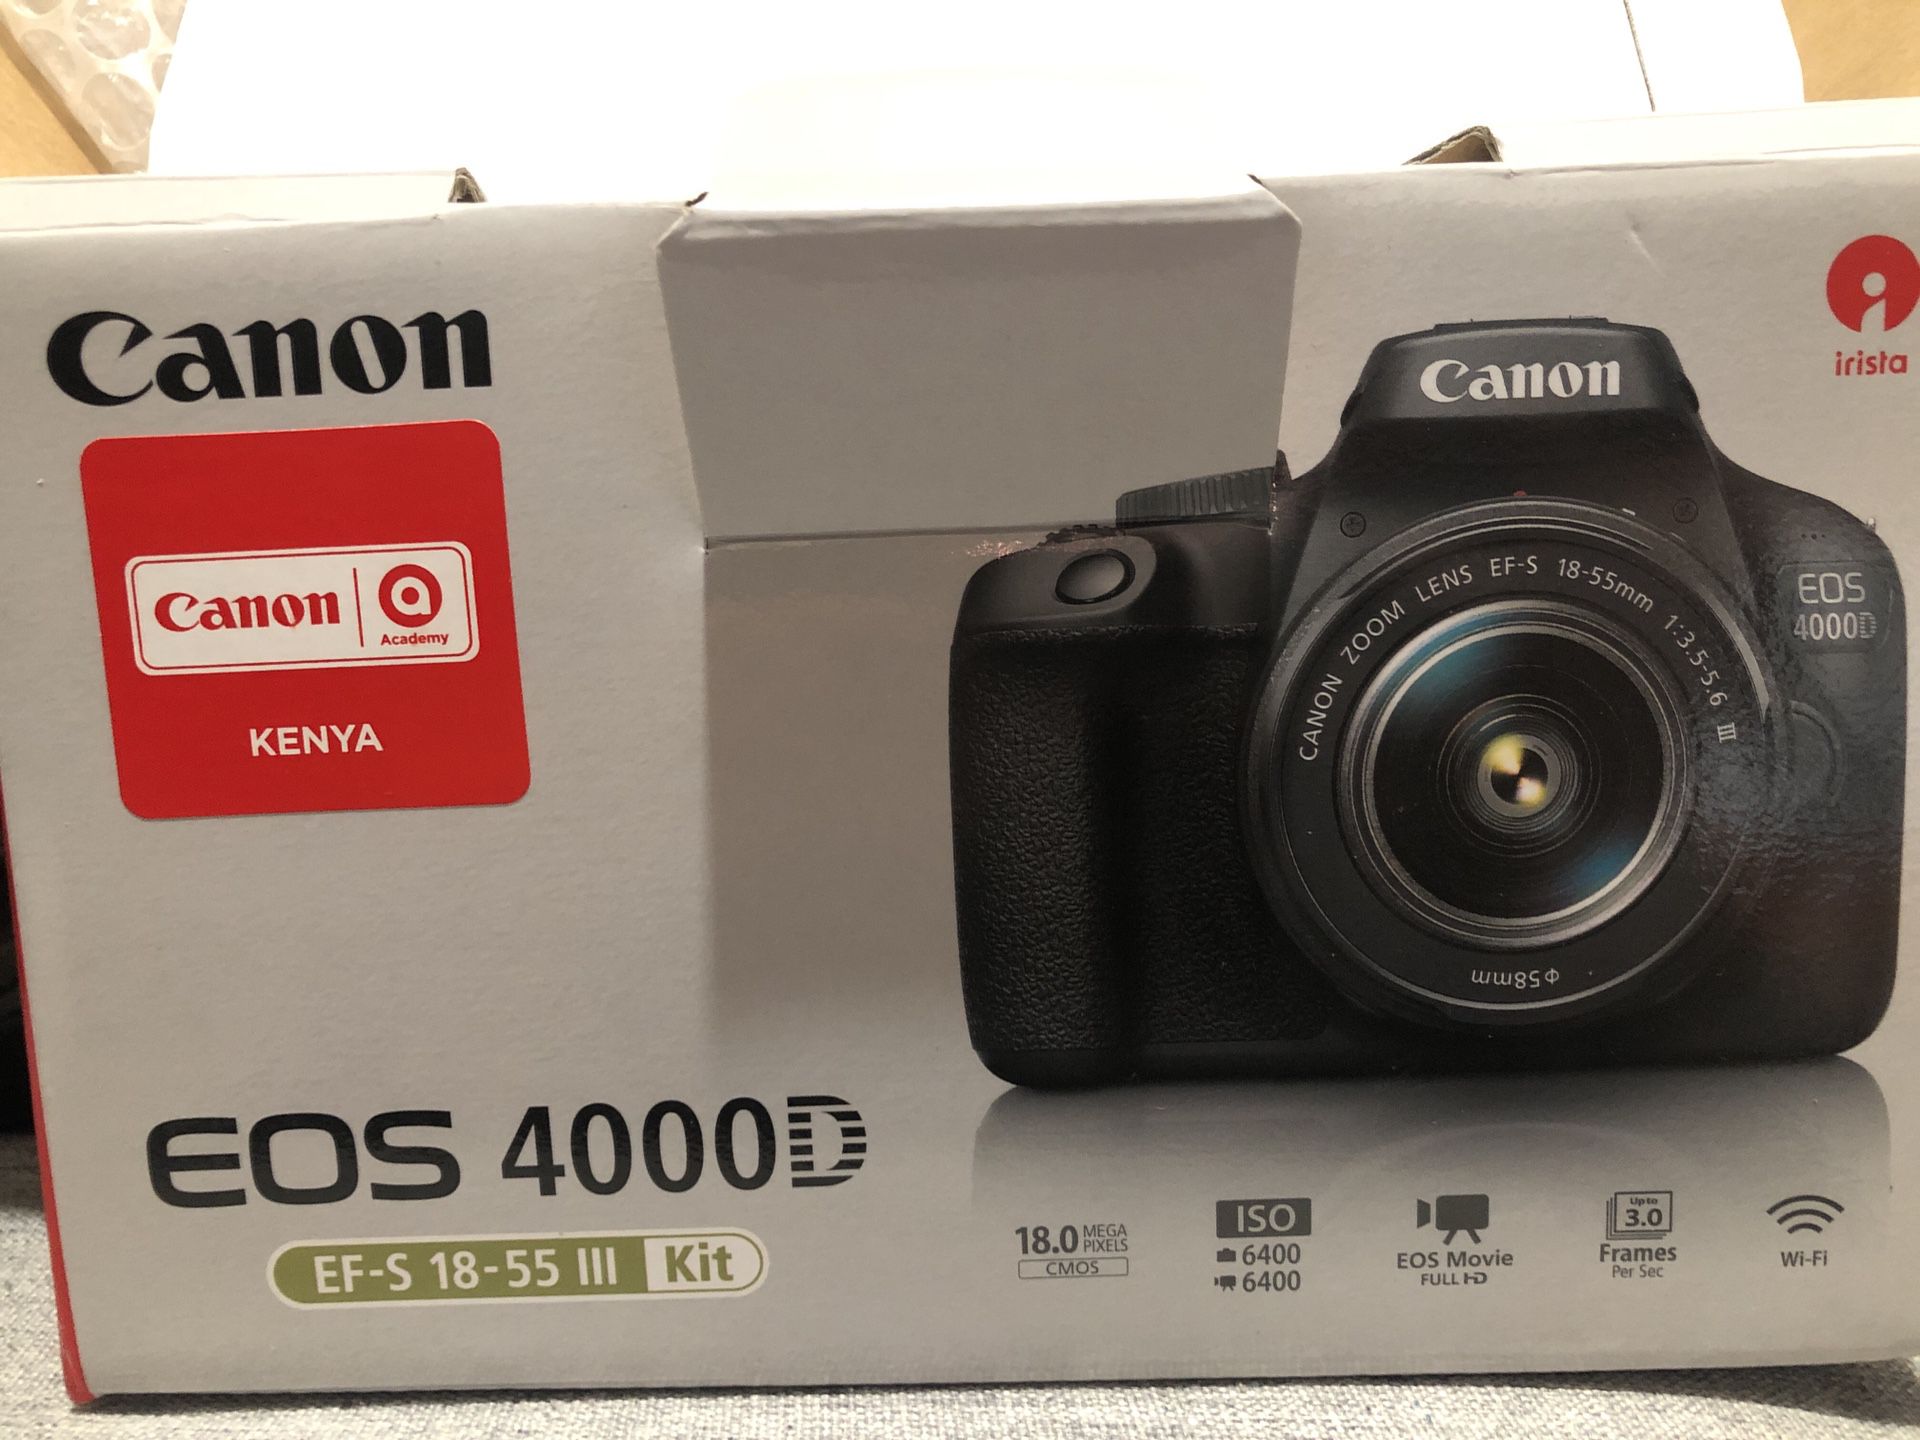 Canon camera - New